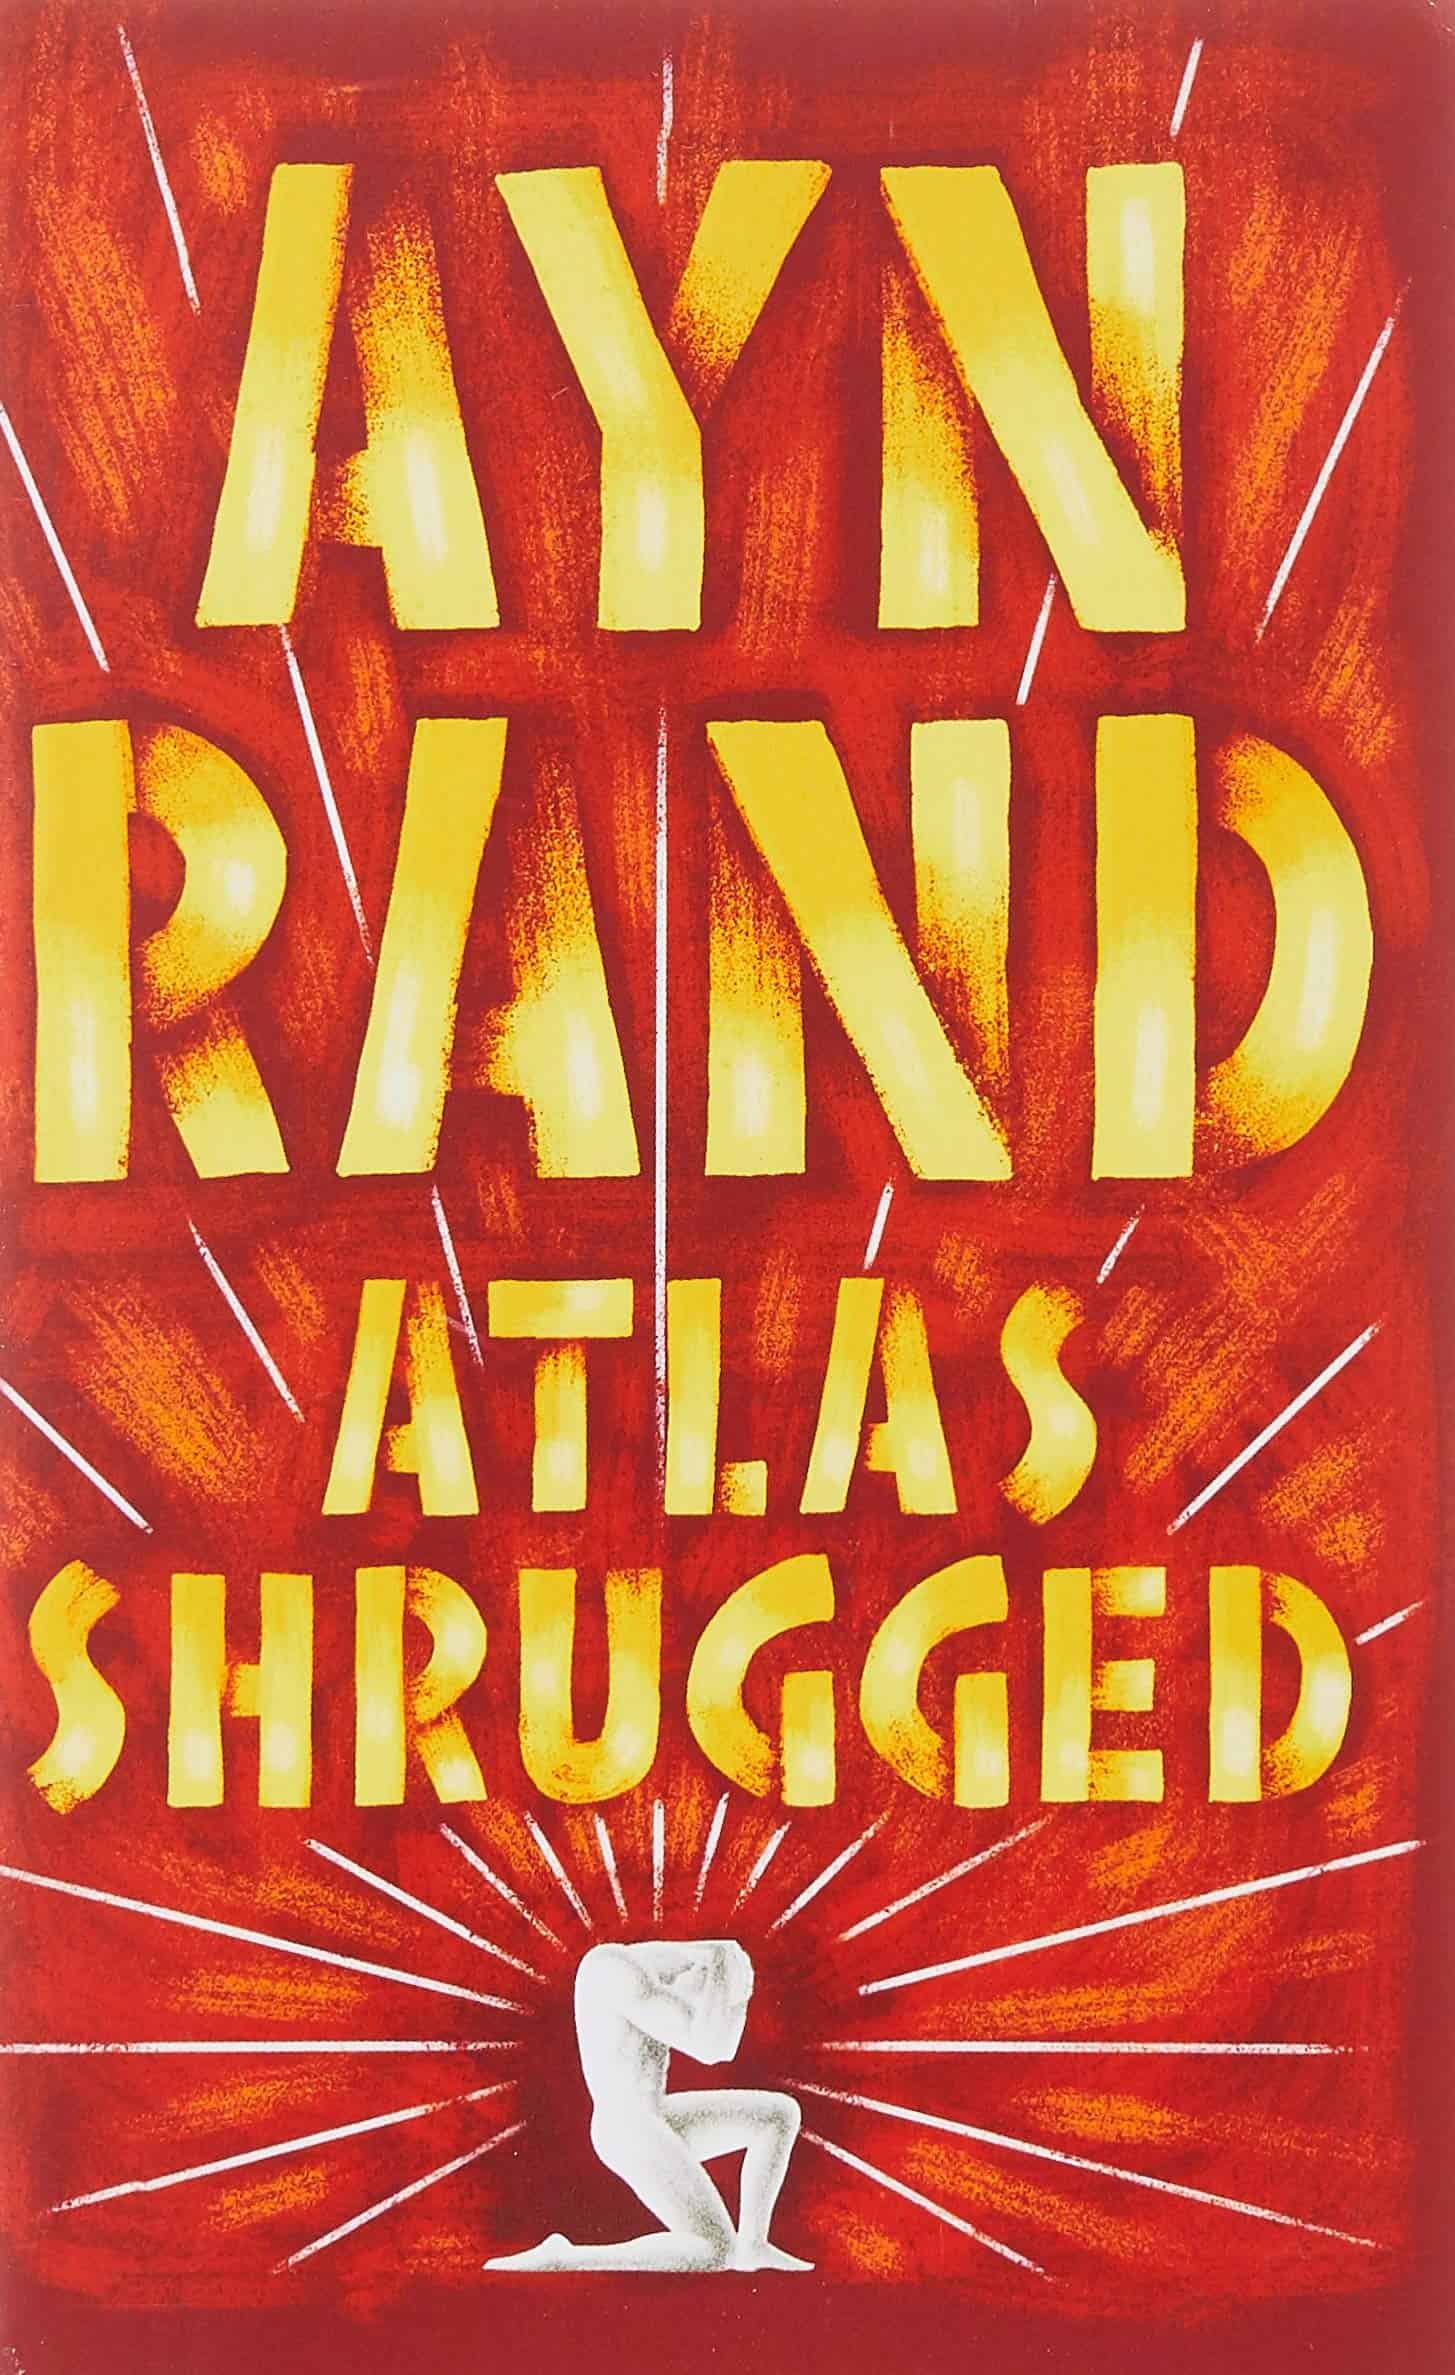 Atlas Shrugged, a book by Ayn Rand